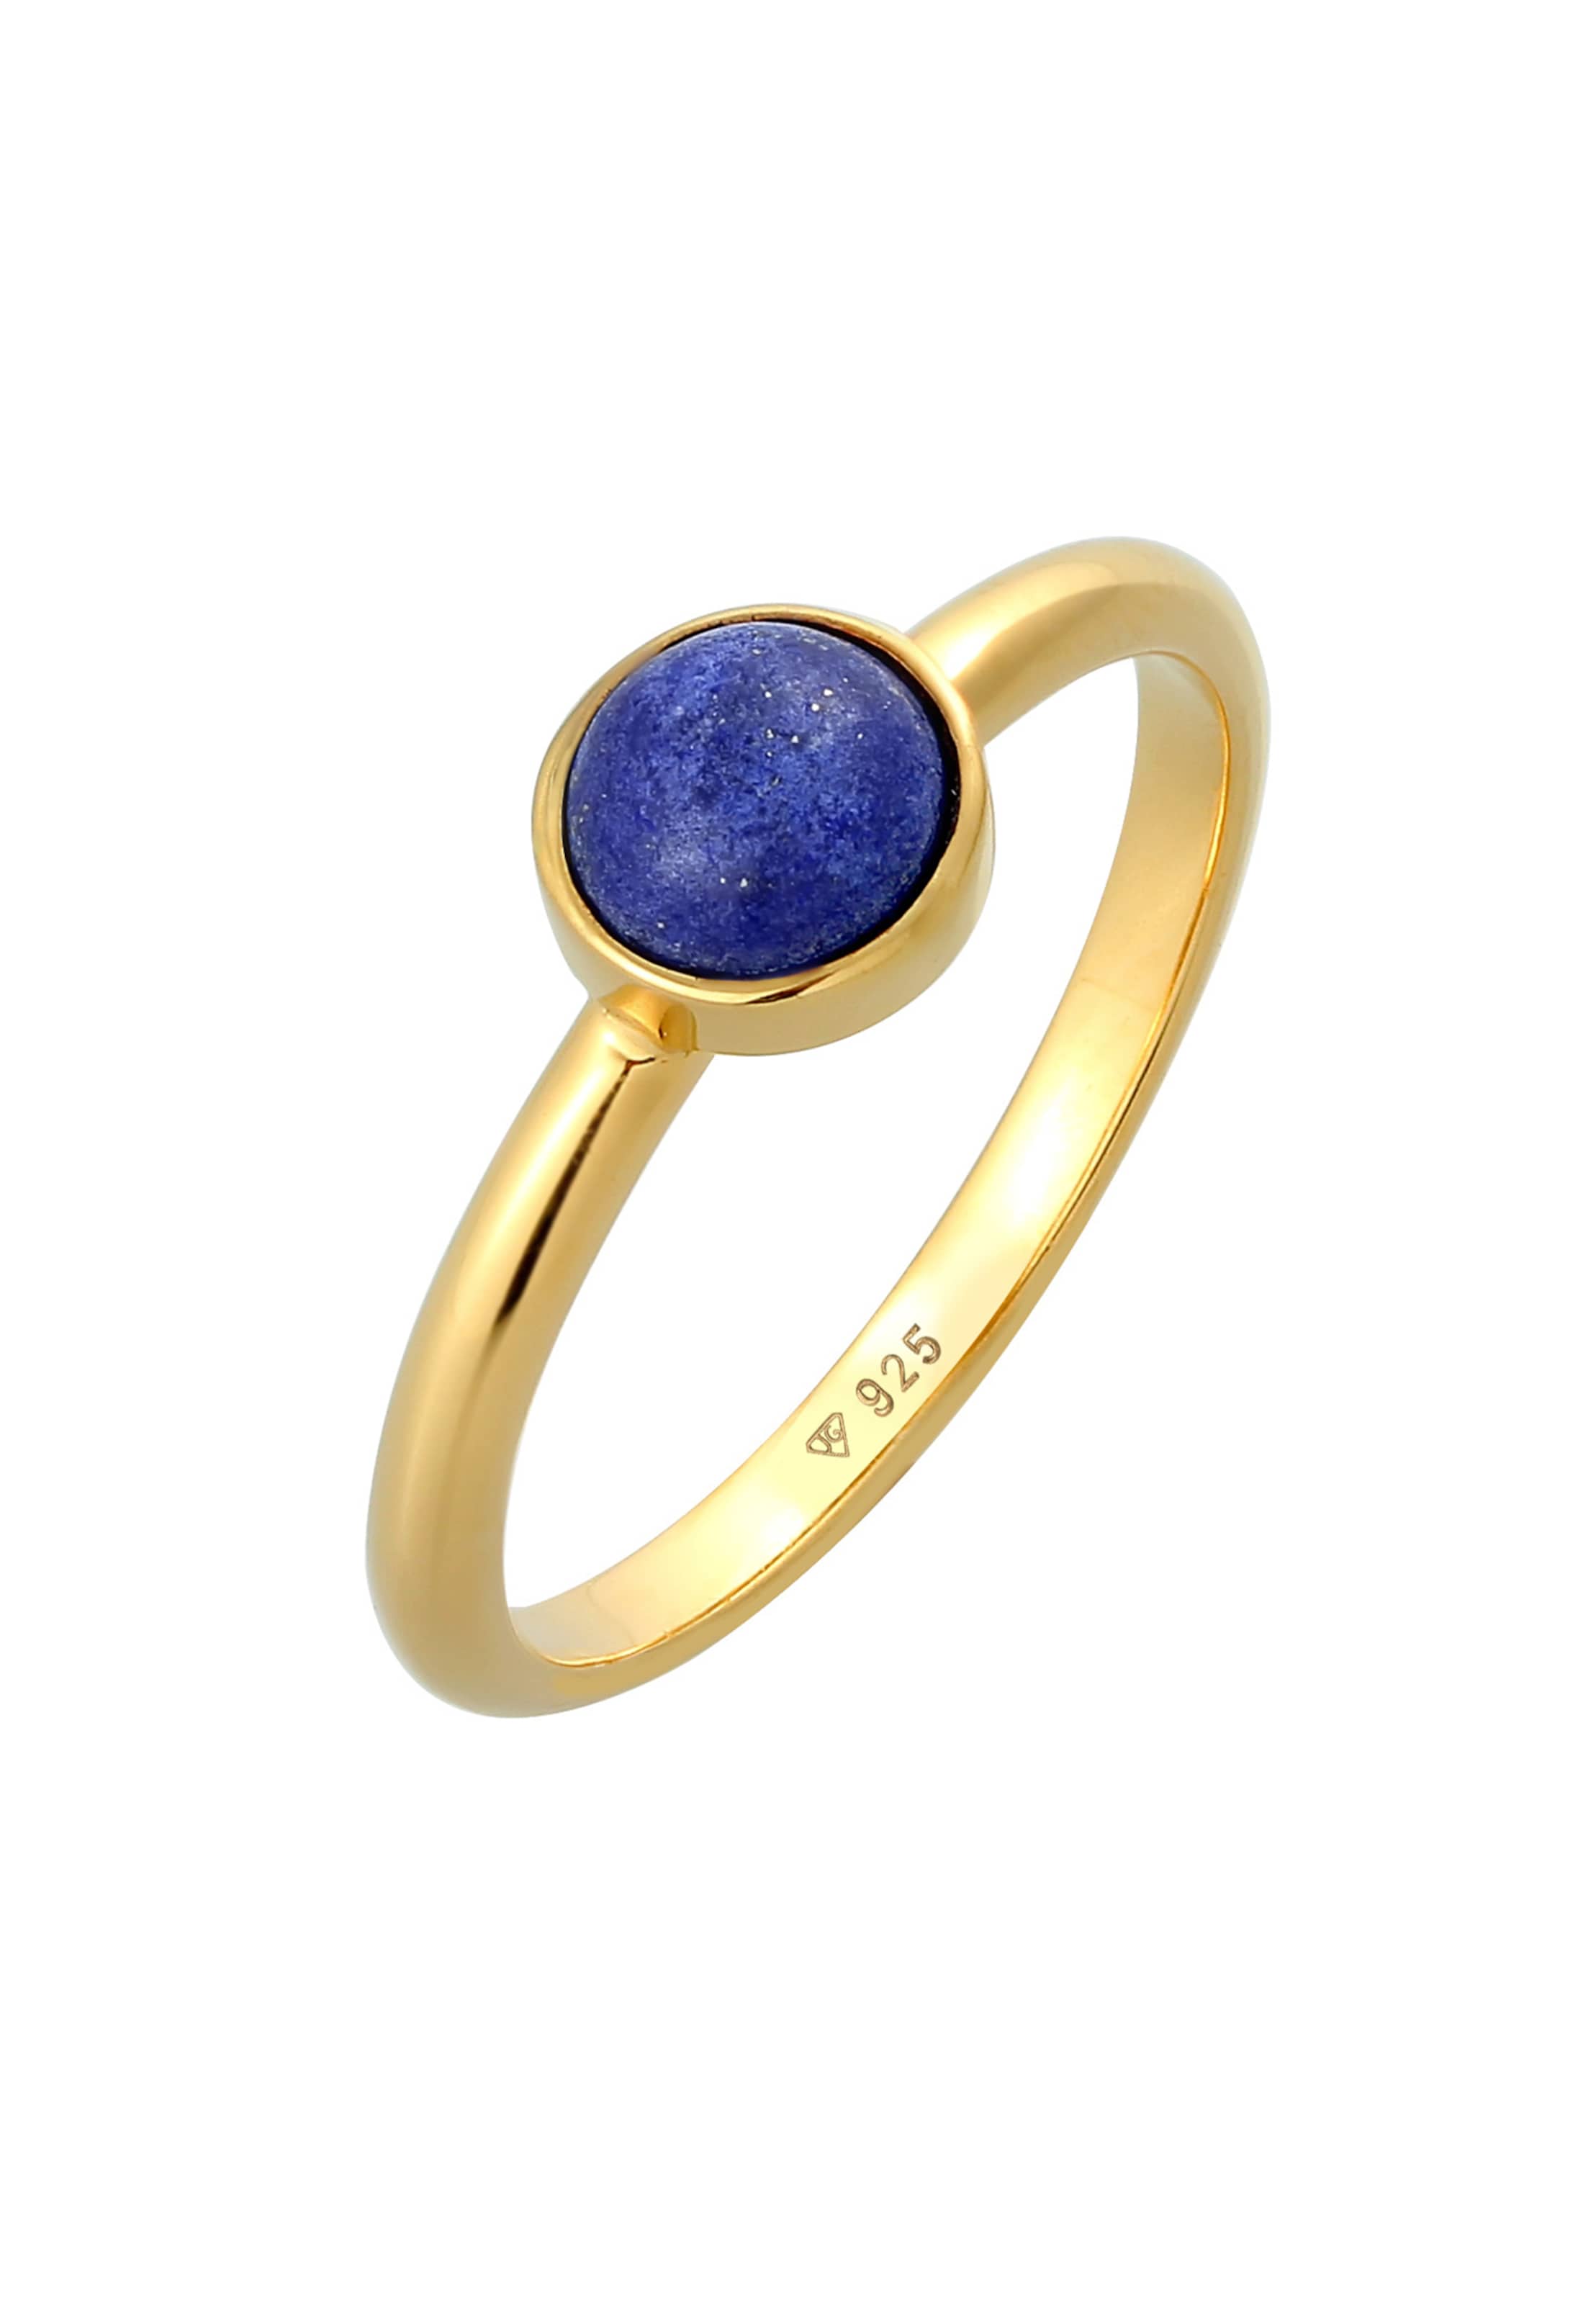 Frauen Schmuck ELLI PREMIUM Ring Edelstein Ring in Blau, Gold - NV90190